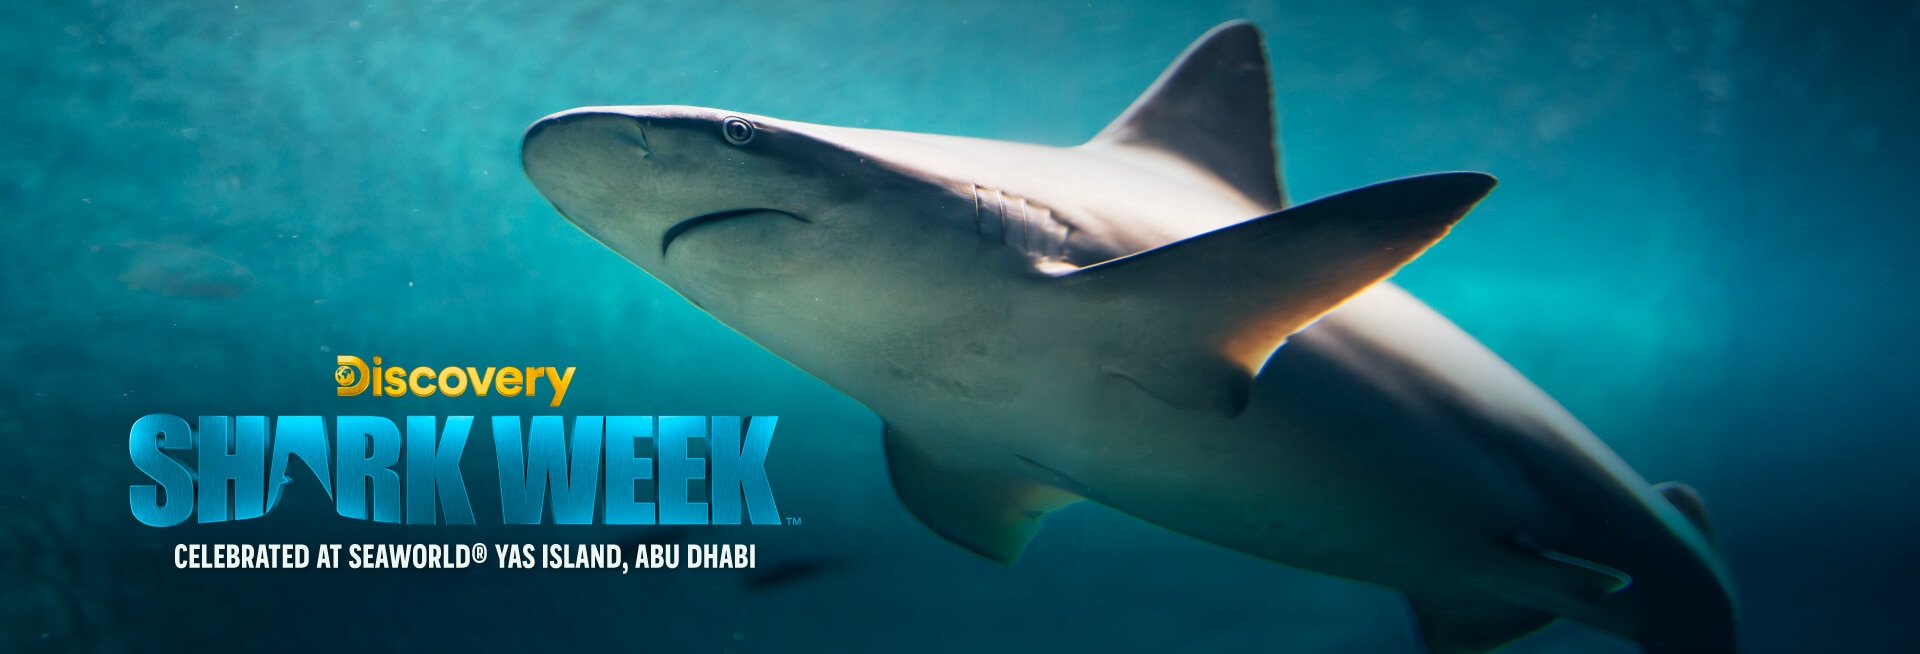 Shark Week banner